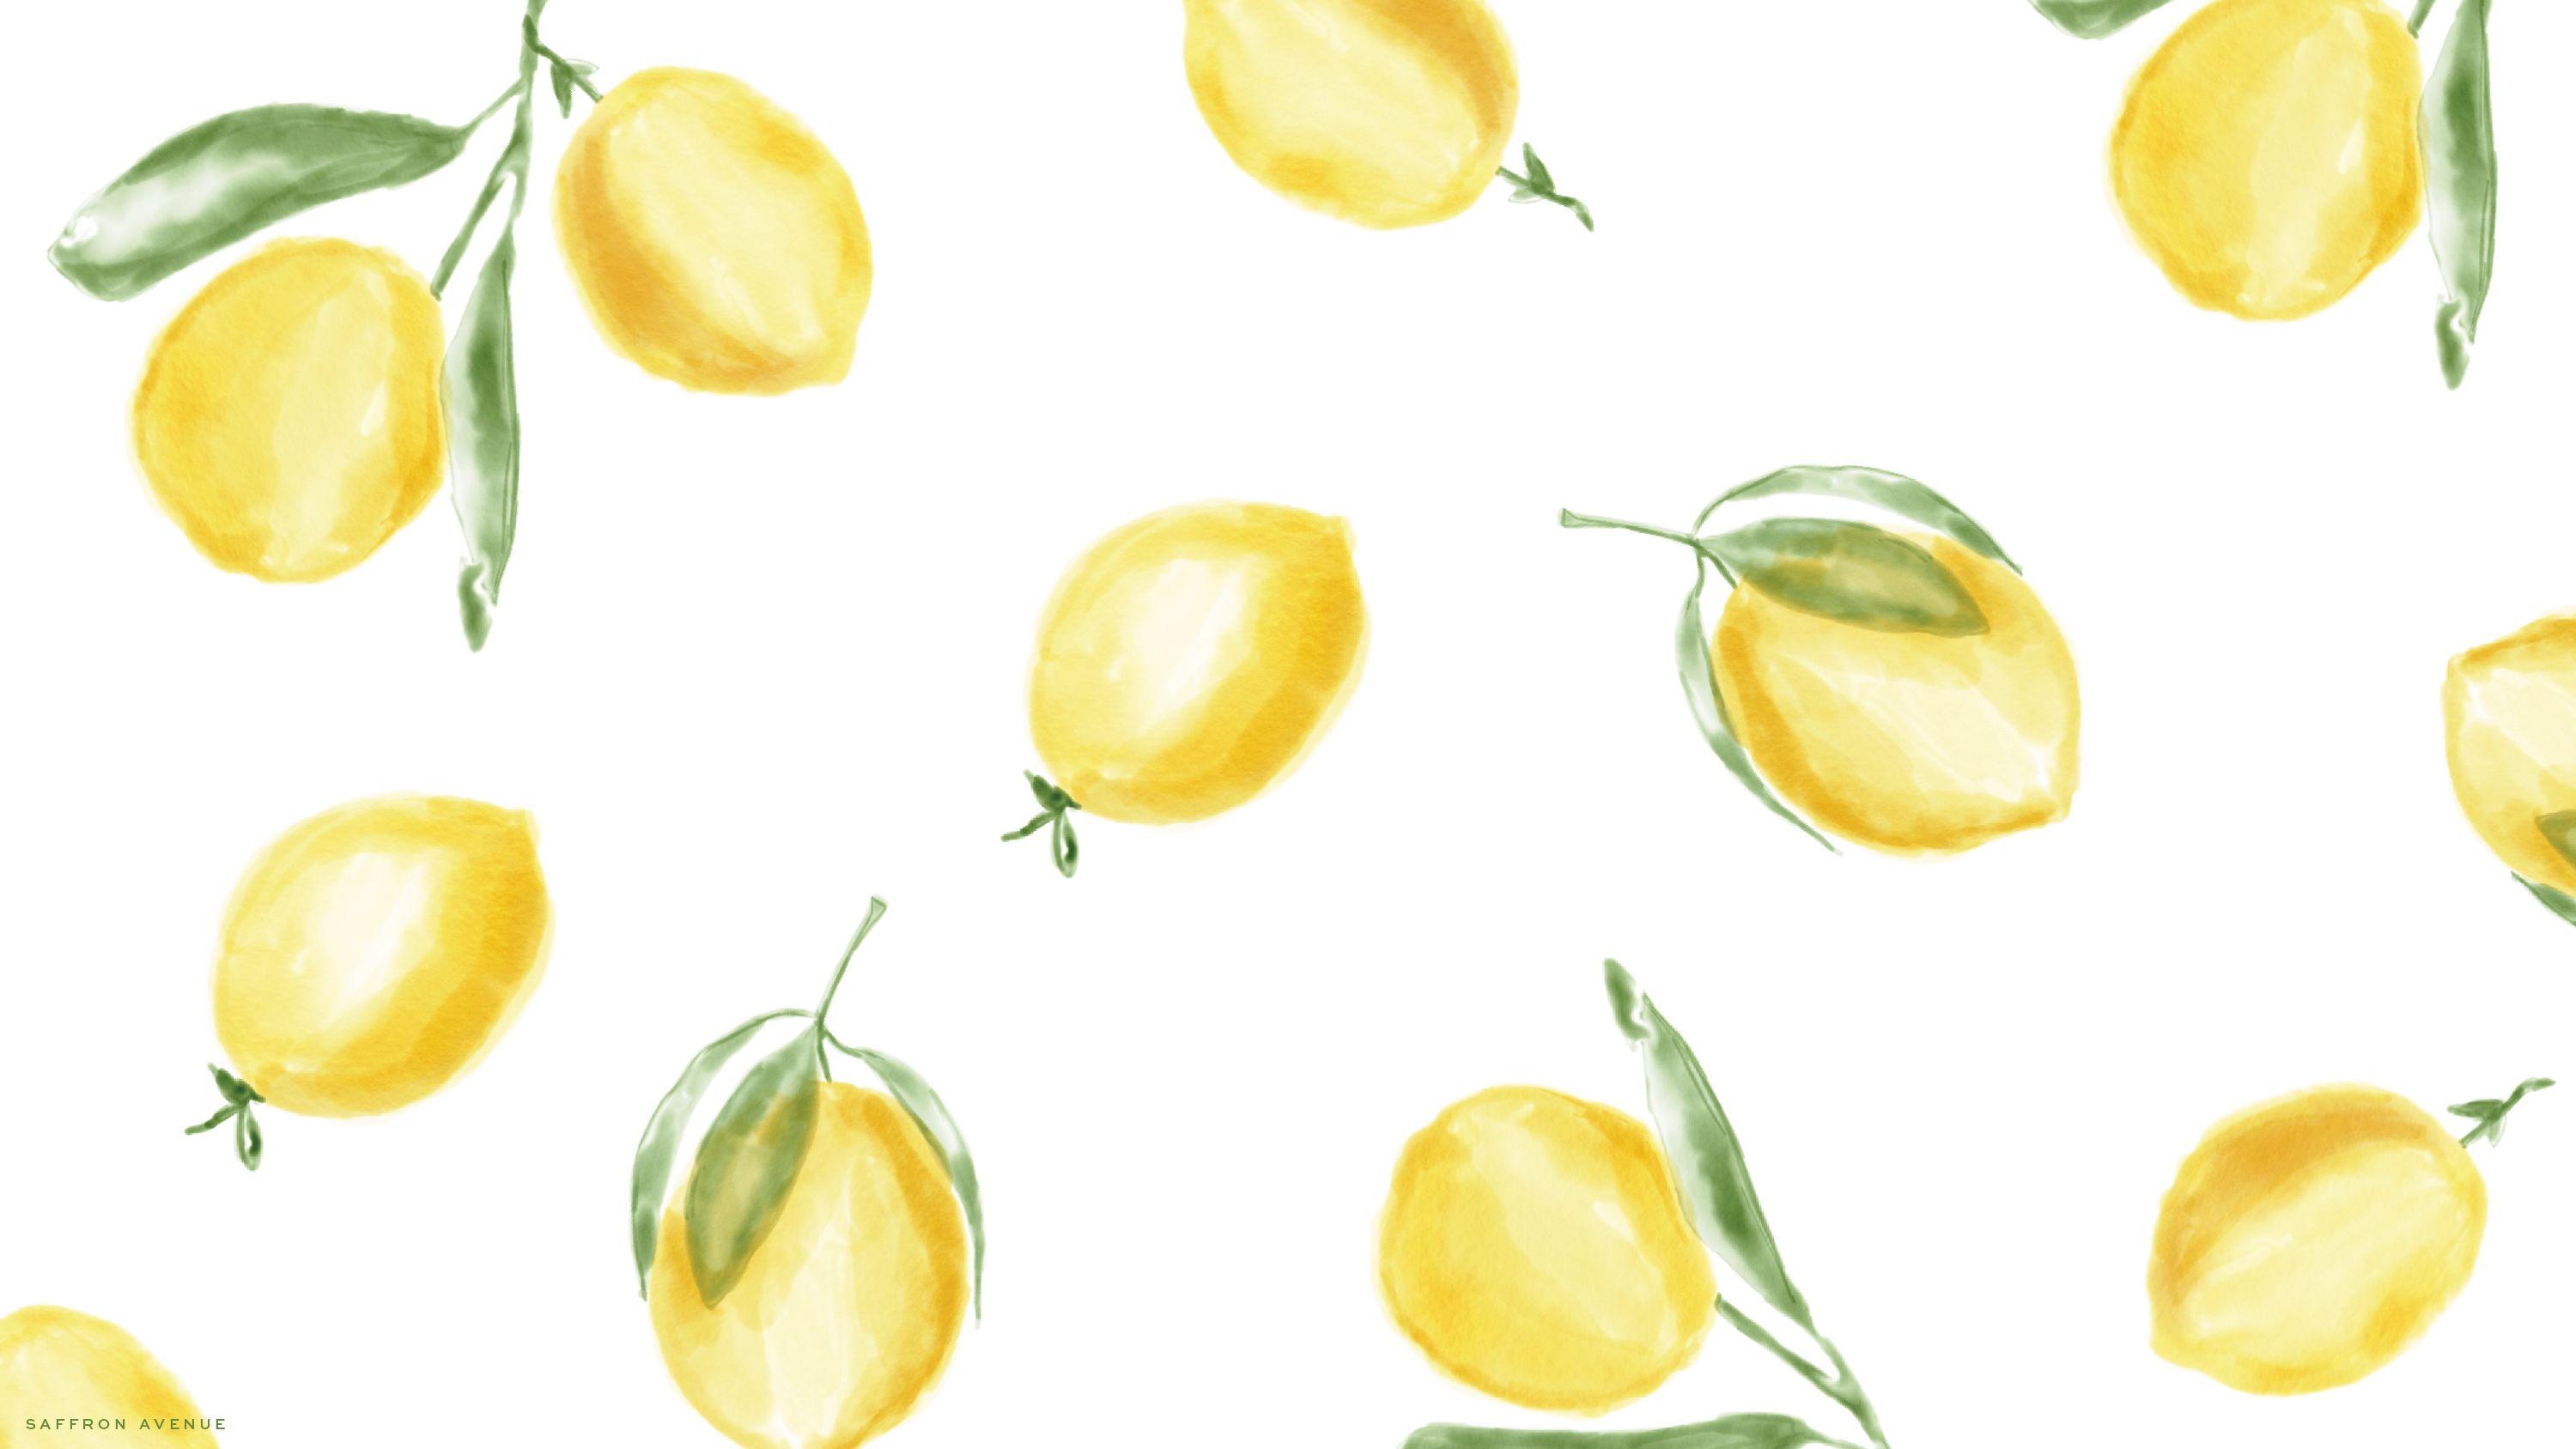 Lemonvôi uống Đồ họa mạng di động Clip art Hình nền máy tính  kết cấu  trái cây png tải về  Miễn phí trong suốt Chanh png Tải về